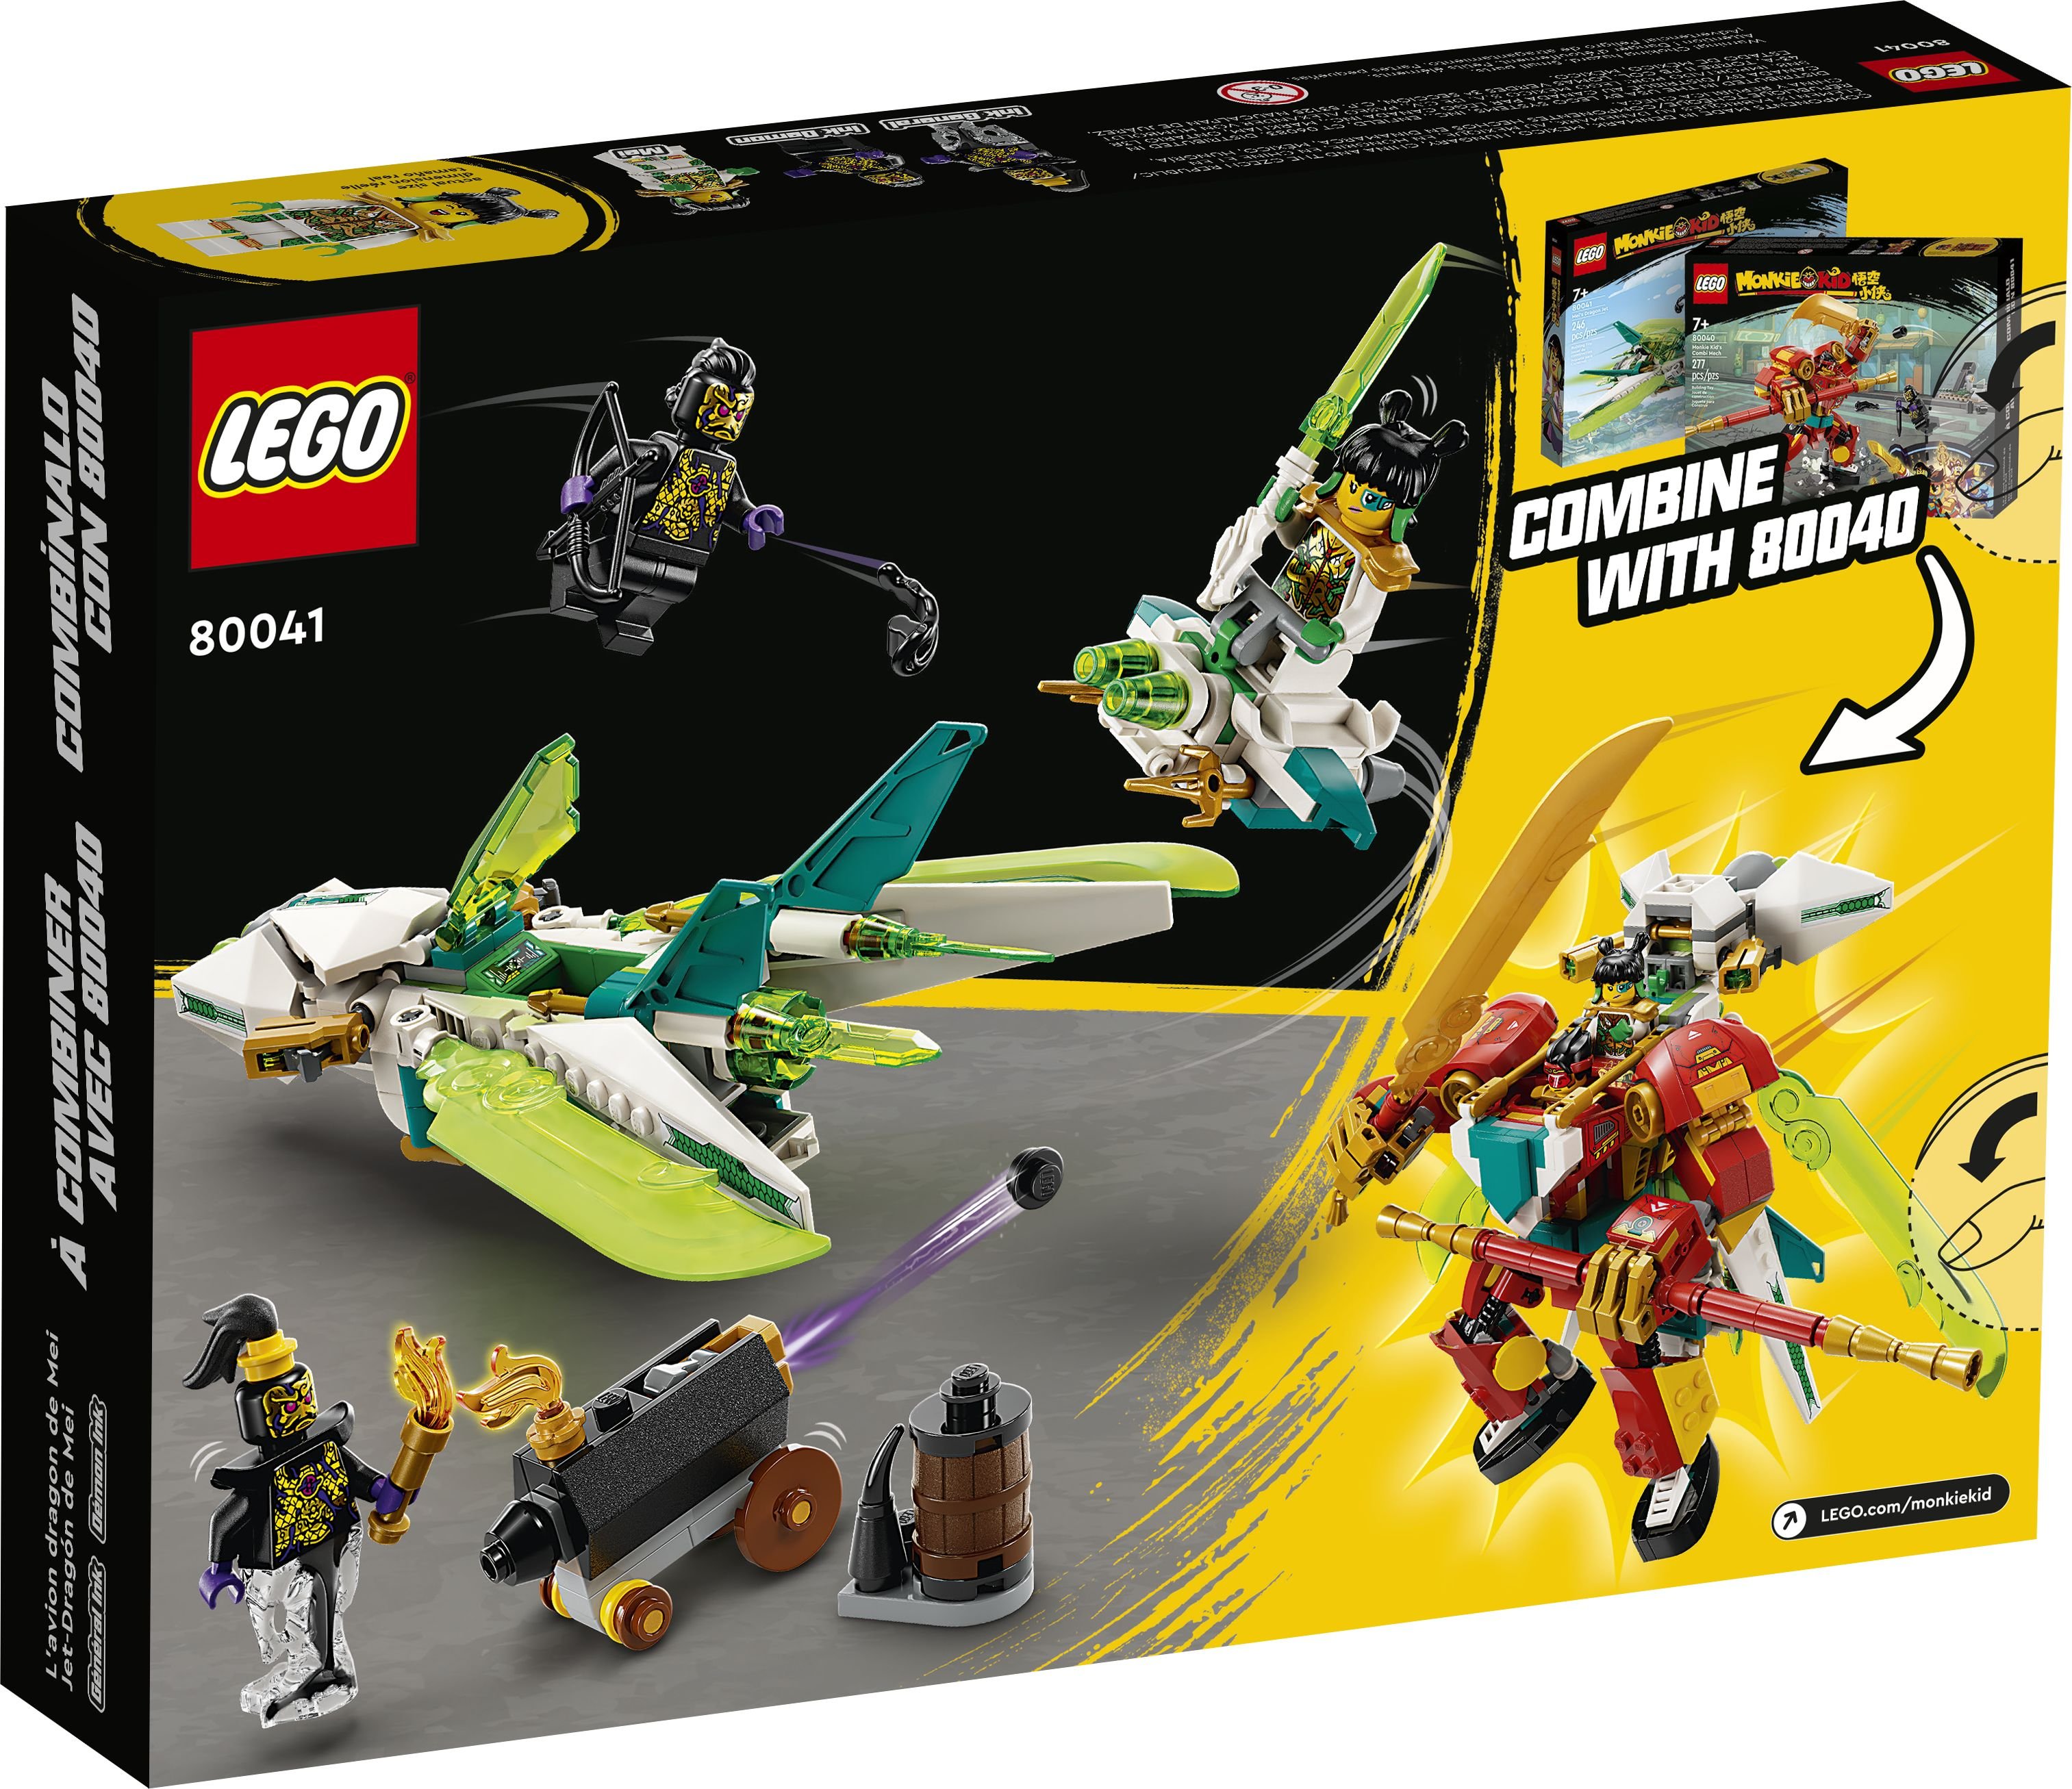 LEGO Monkie Kid 80041 Meis Drachen-Jet LEGO_80041_Box5_v39.jpg